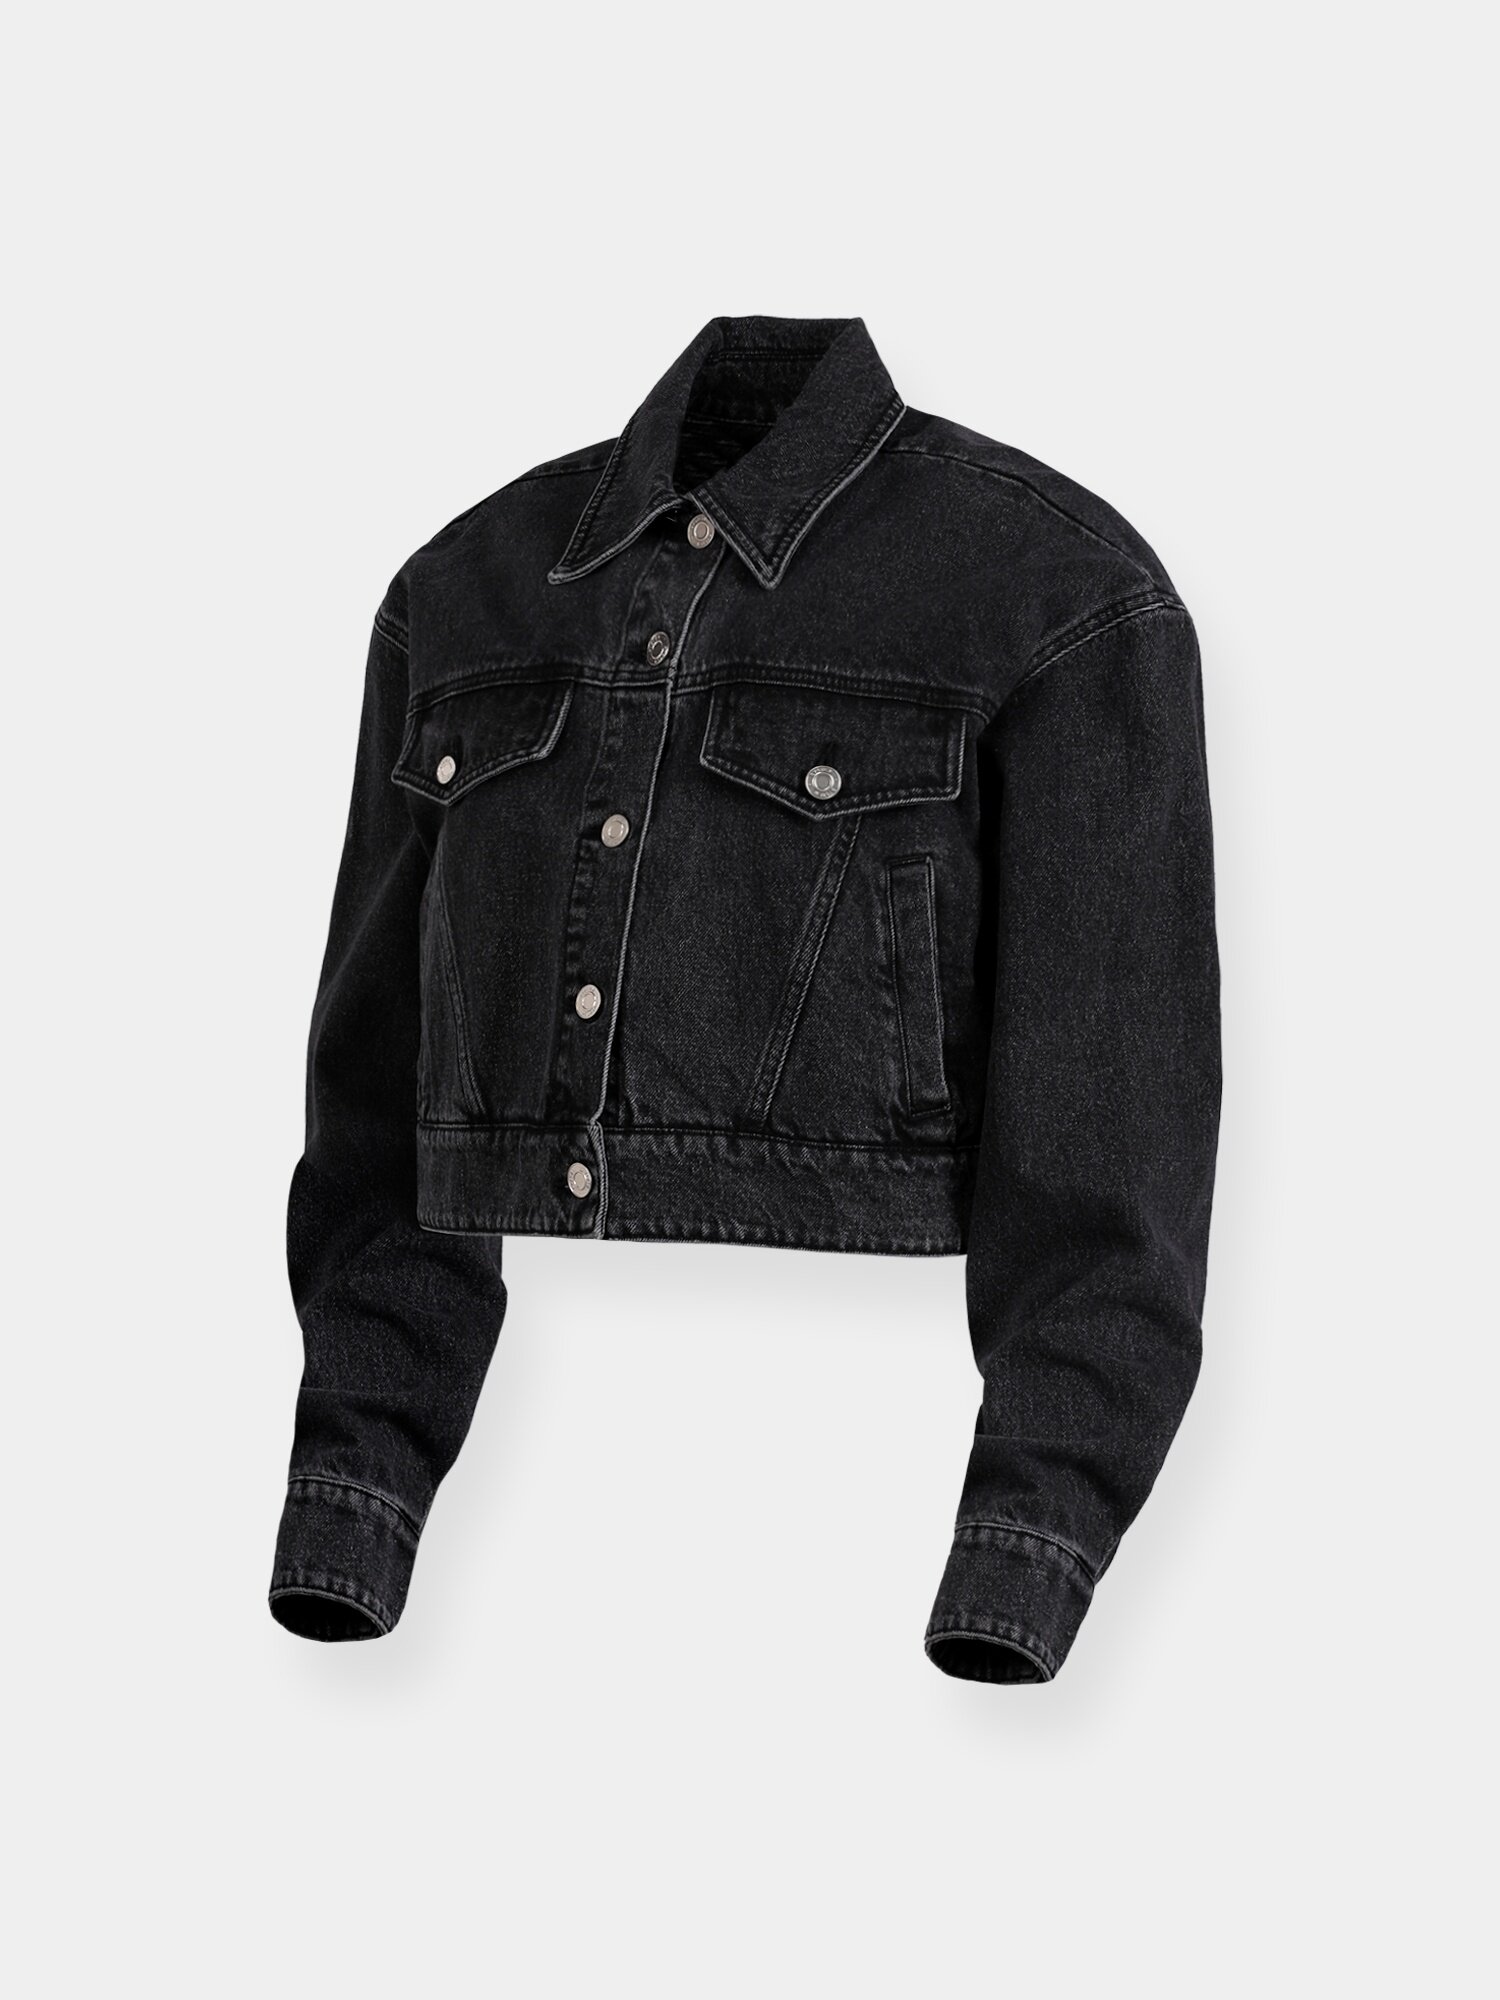 Джинсовая куртка SYSTEM STUDIOS Black Washed Denim Jacket